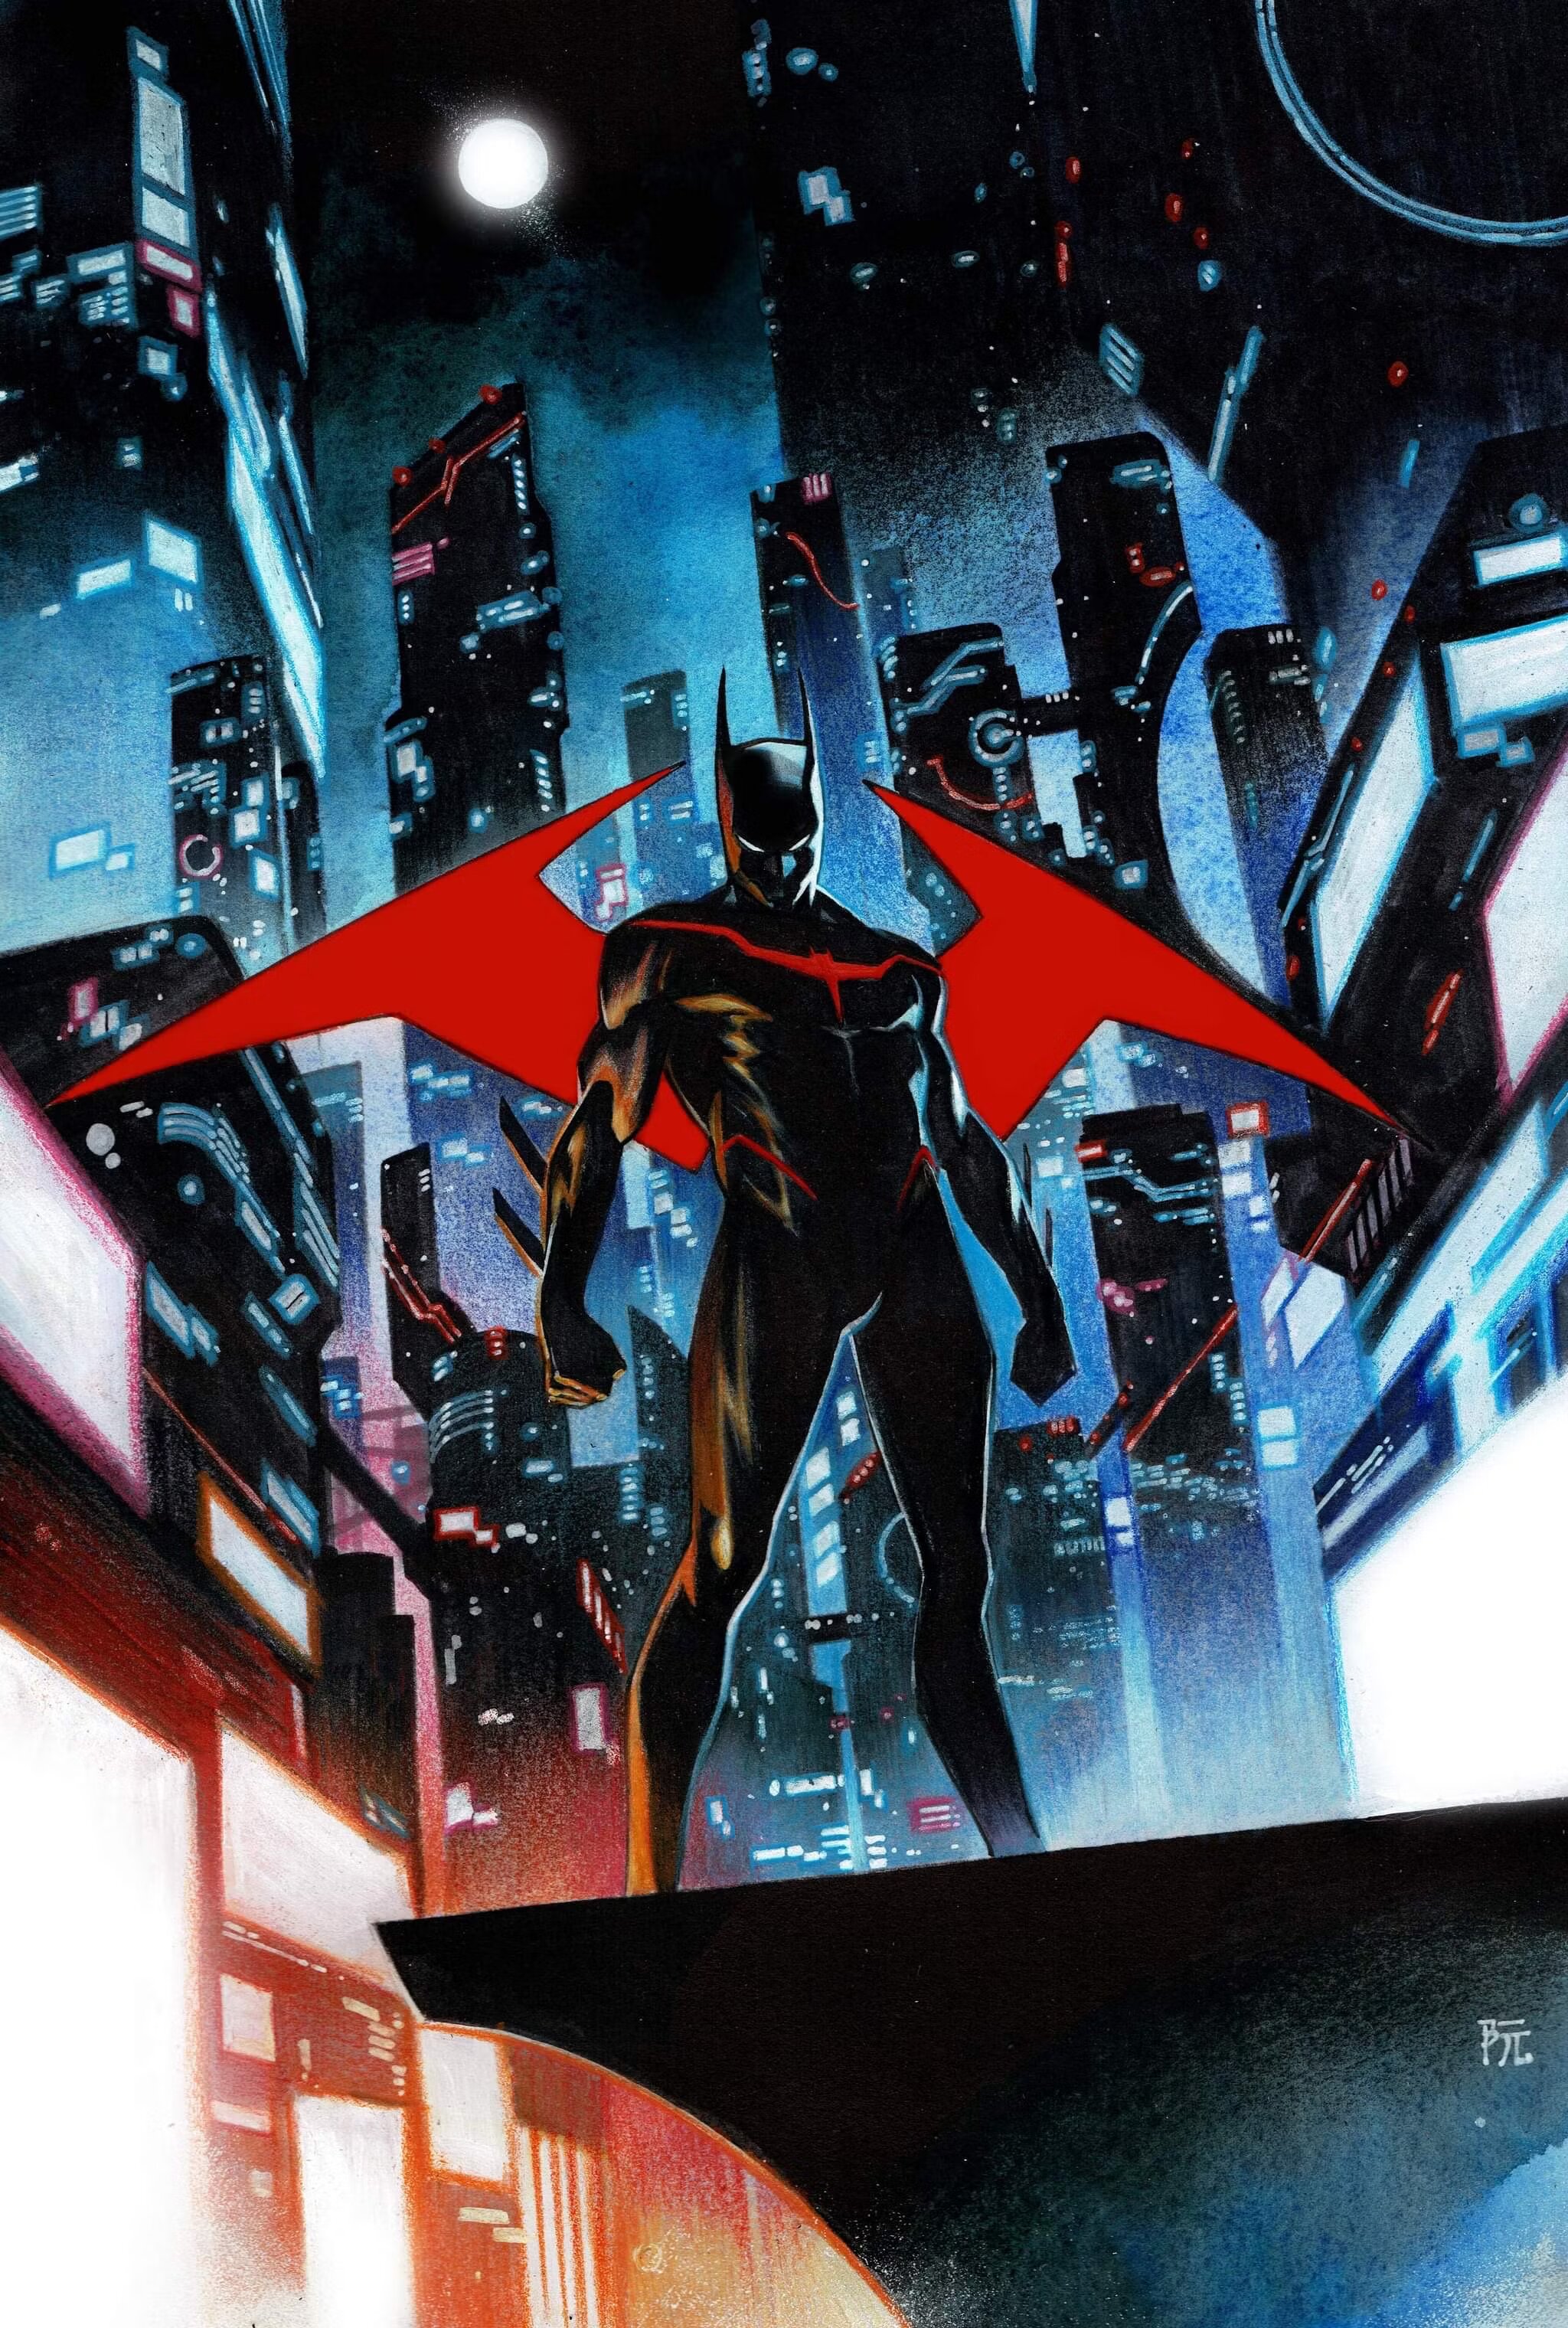 Терри Макгиннес показал обновленный бэткостюм Бэтмена будущего